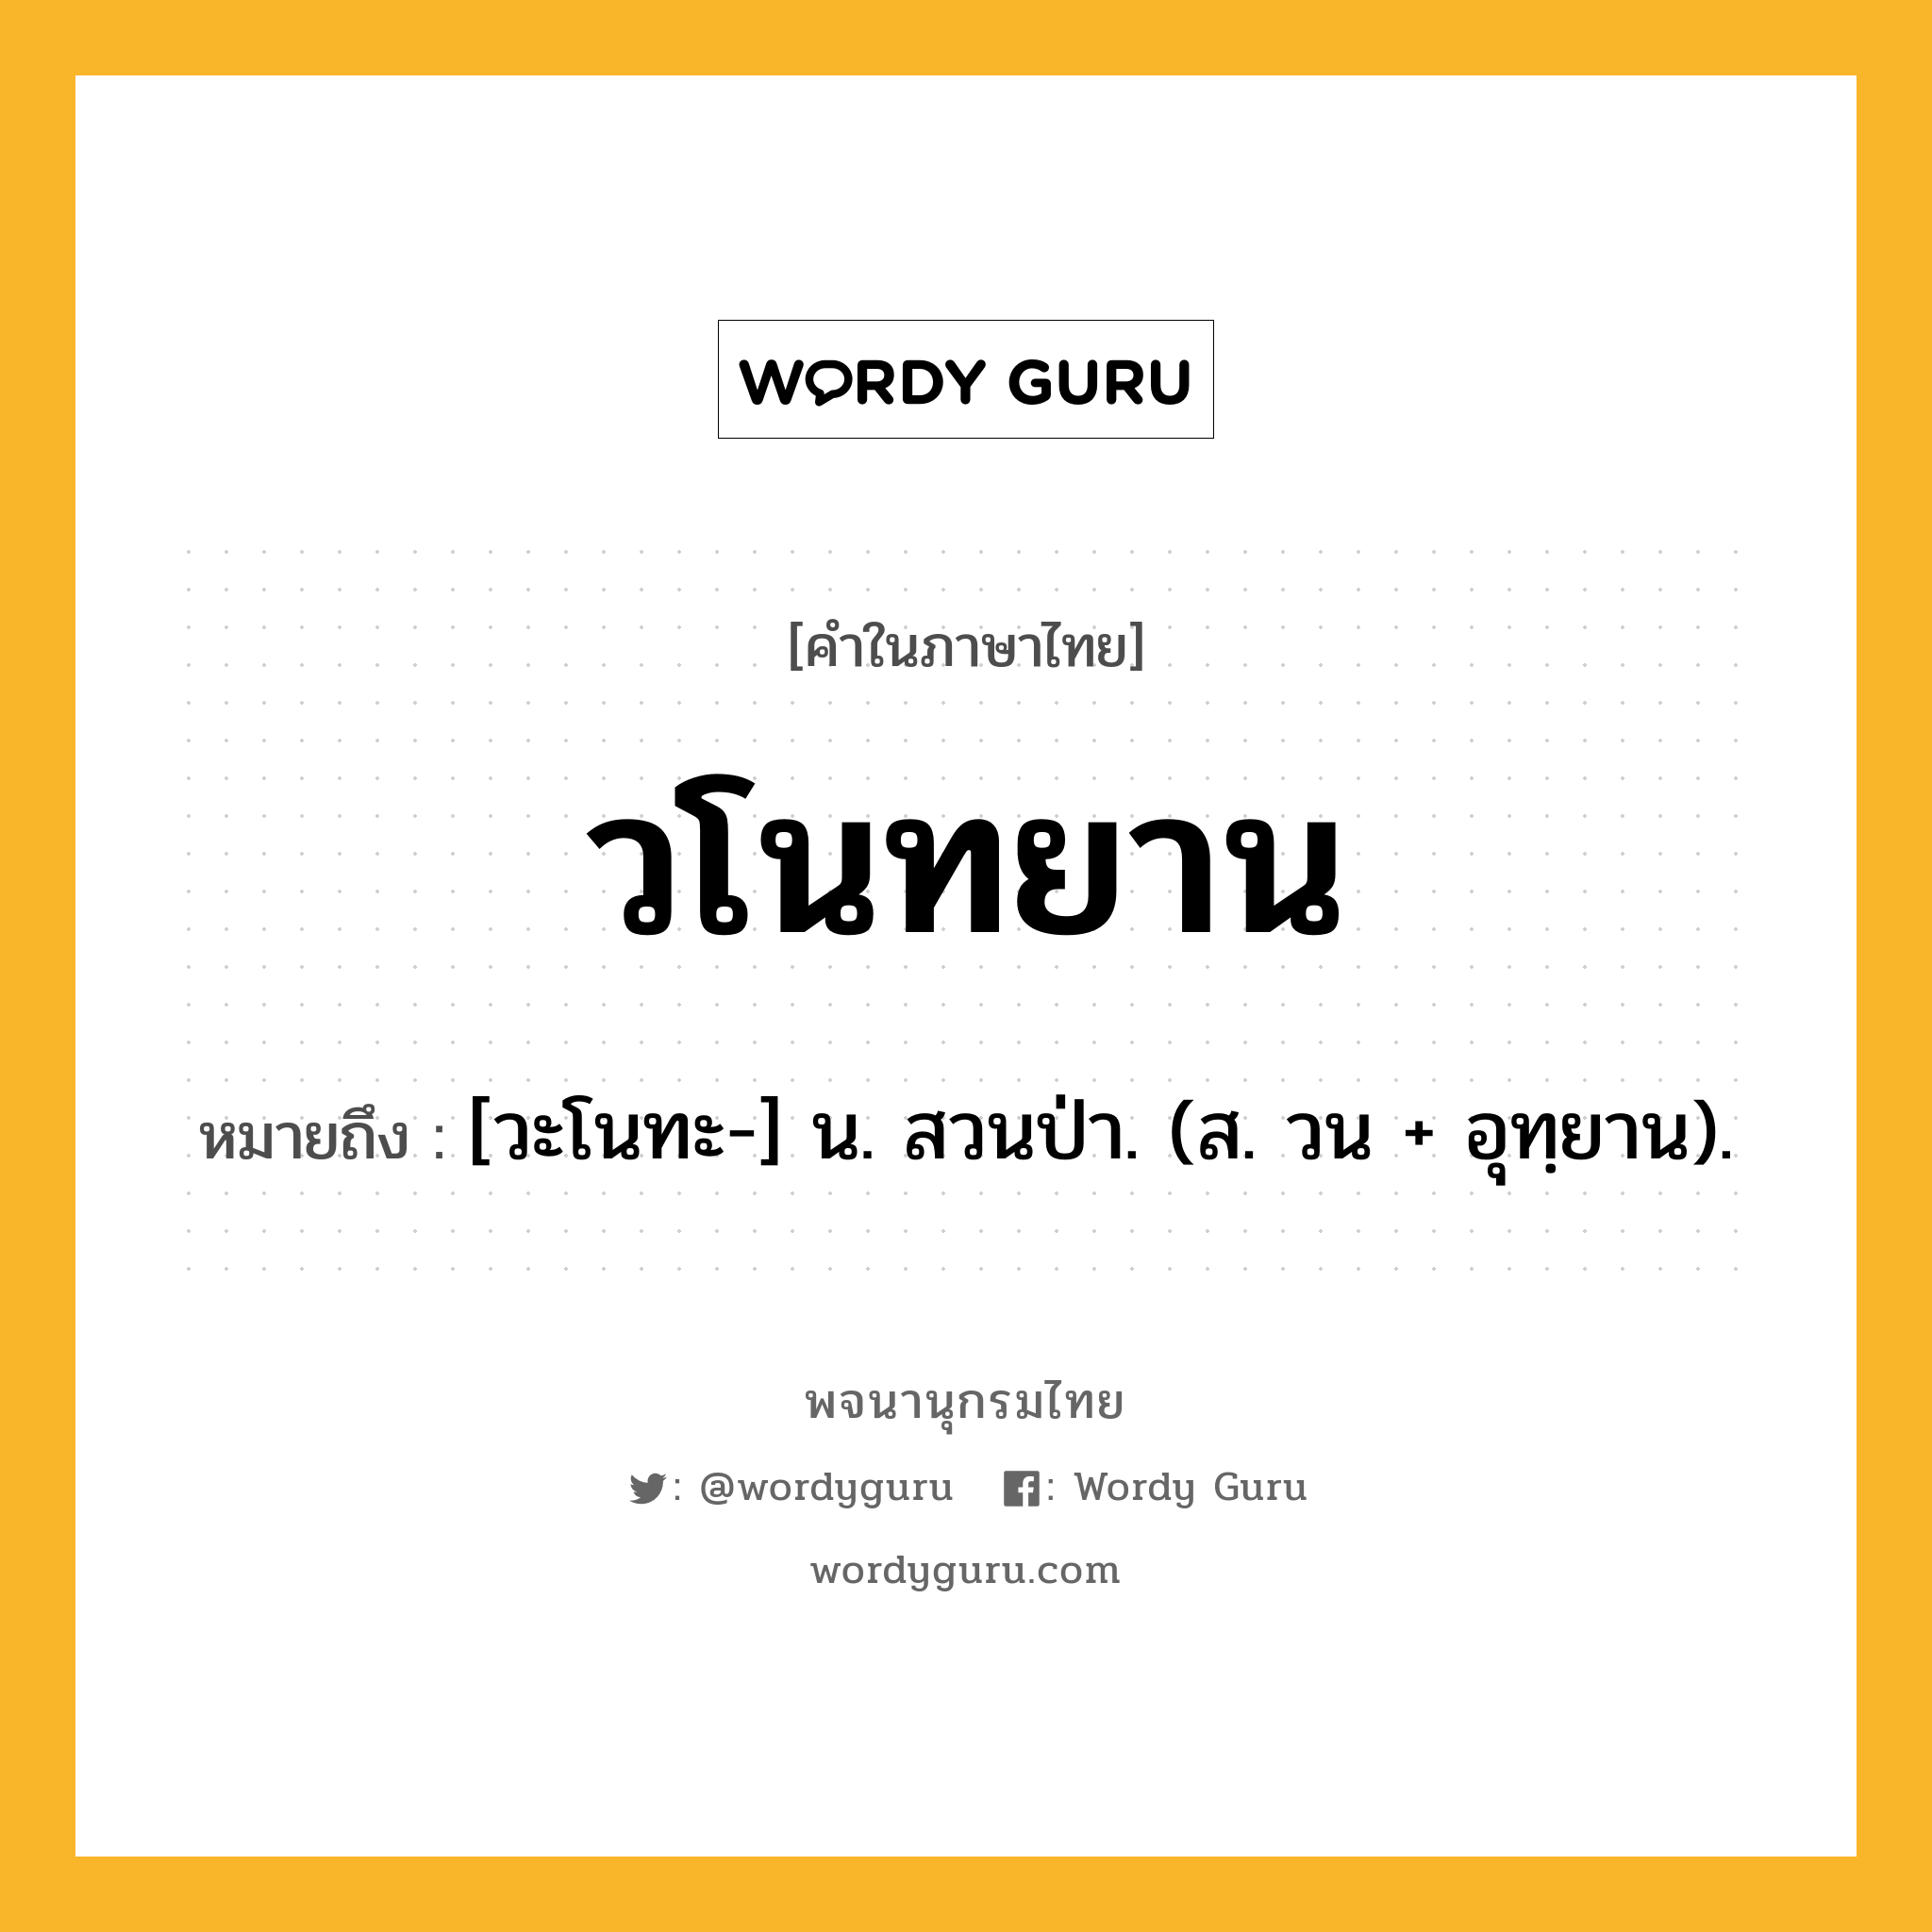 วโนทยาน หมายถึงอะไร?, คำในภาษาไทย วโนทยาน หมายถึง [วะโนทะ-] น. สวนป่า. (ส. วน + อุทฺยาน).